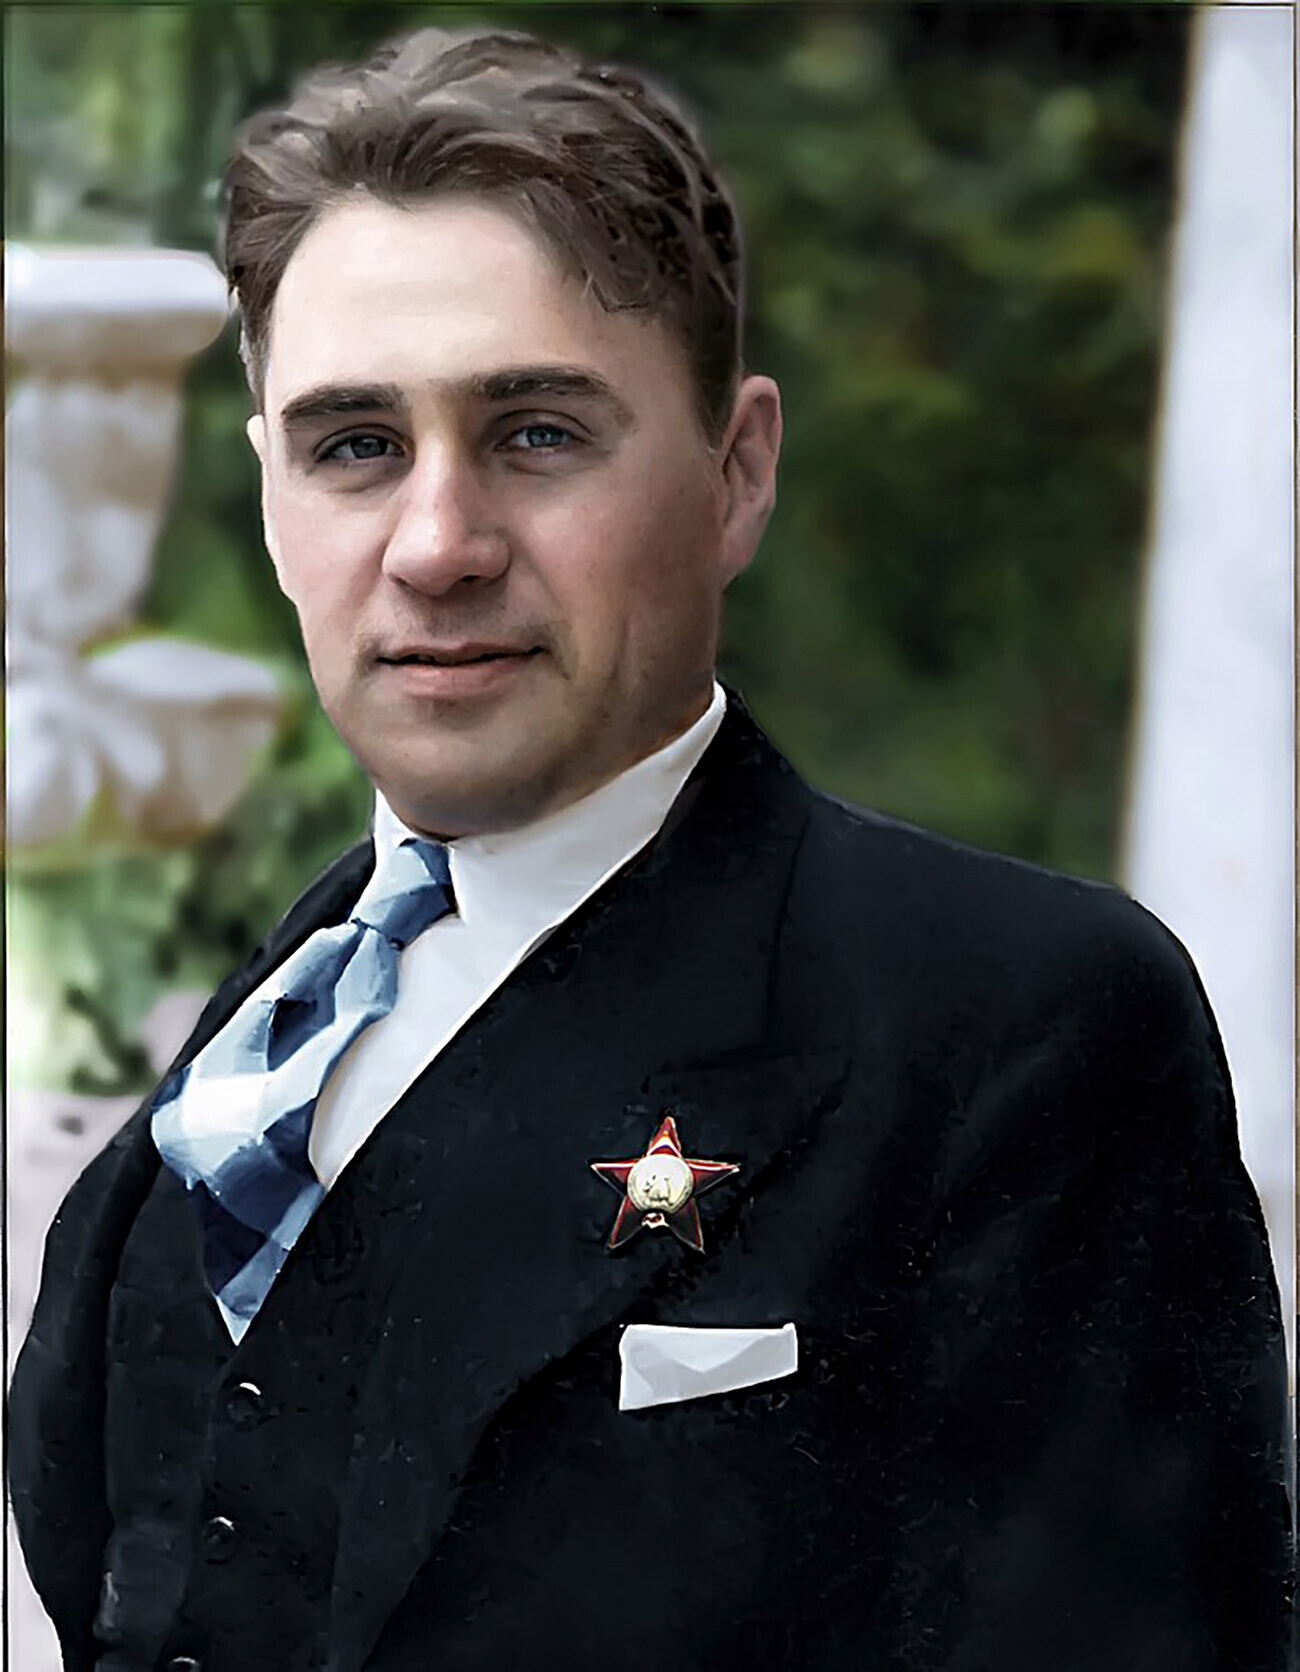 O organizador do assassinato, general Pável Sudoplatov.

